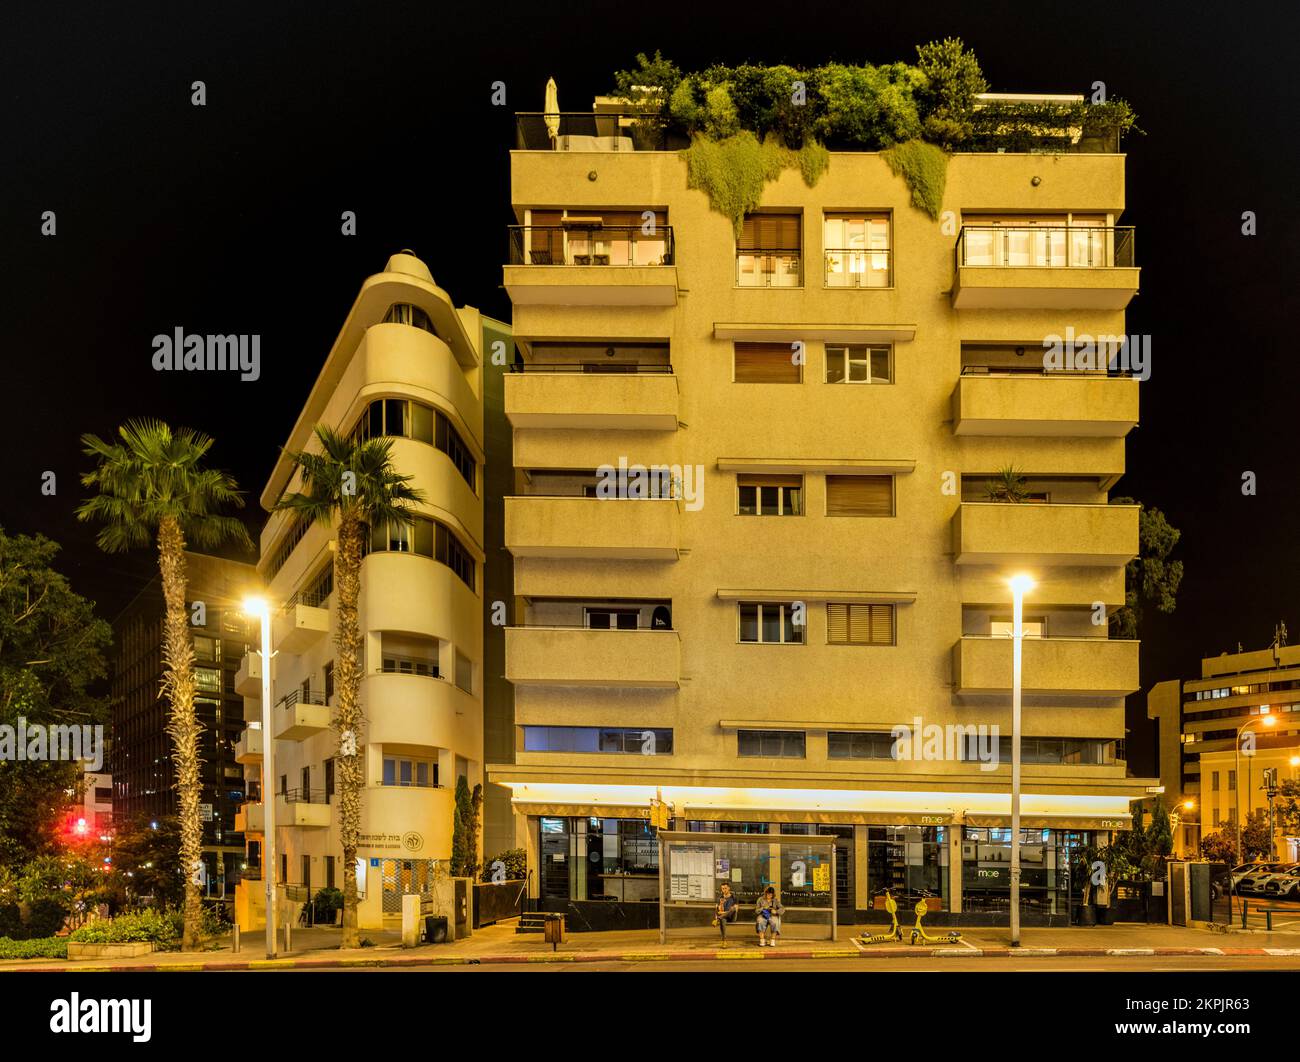 Vue sur les propriétés Bauhaus de tel Aviv, la ville la plus importante au monde, le riche patrimoine de l'architecture du mouvement Bauhaus. Banque D'Images